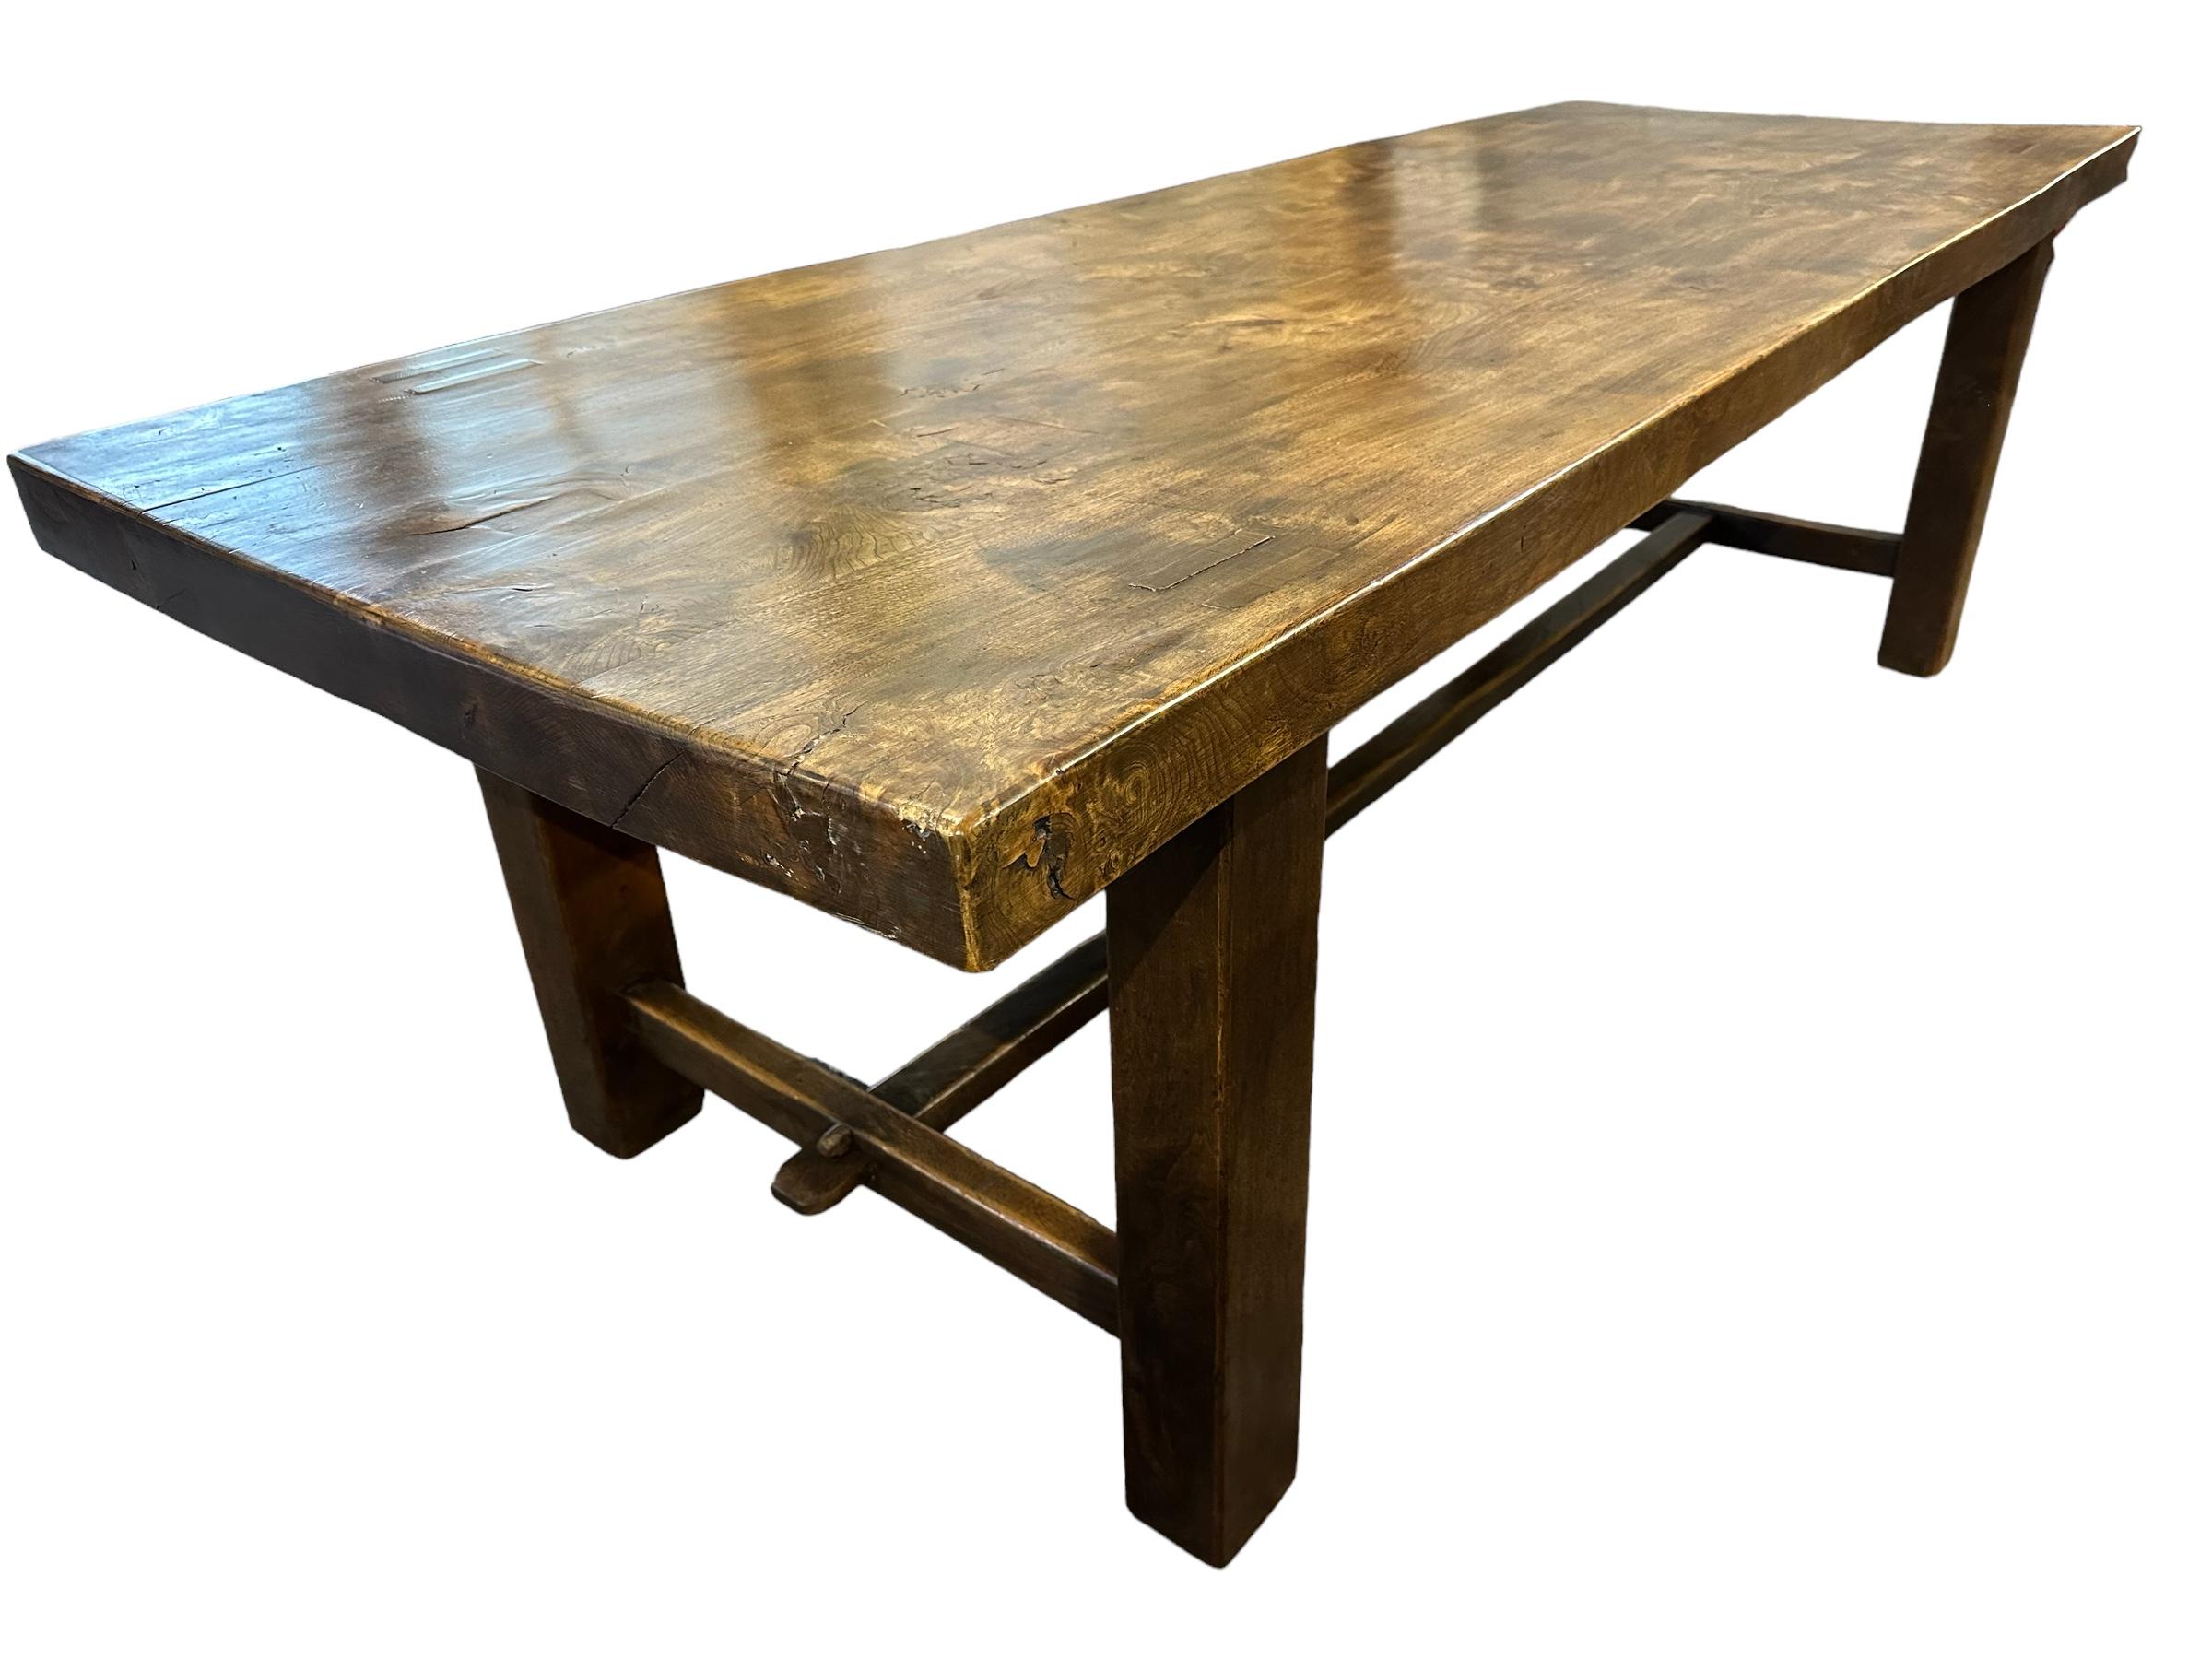 Der Normandie-Tisch aus französischer Ulme ist ein gutes Beispiel für einen echten Normandie-Tisch. Der robuste Sockel und die guten Proportionen machen ihn zu einem begehrten Möbelstück. Die schöne dunkle Ulme mit der exquisiten Maserung auf der